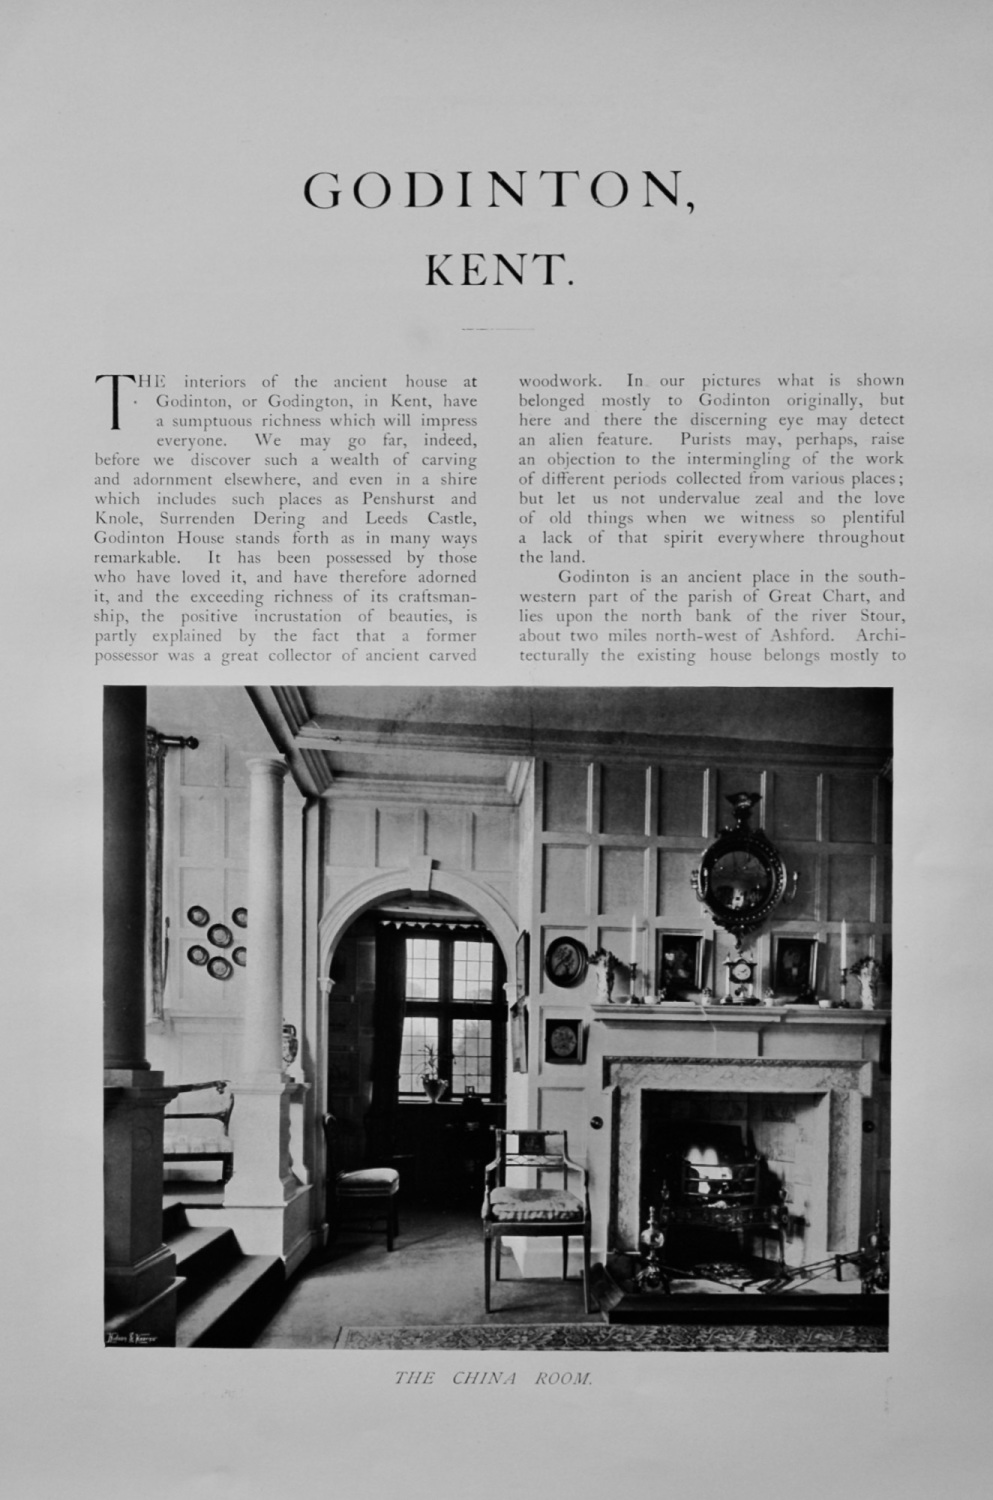 Godinton, Kent.  1904.